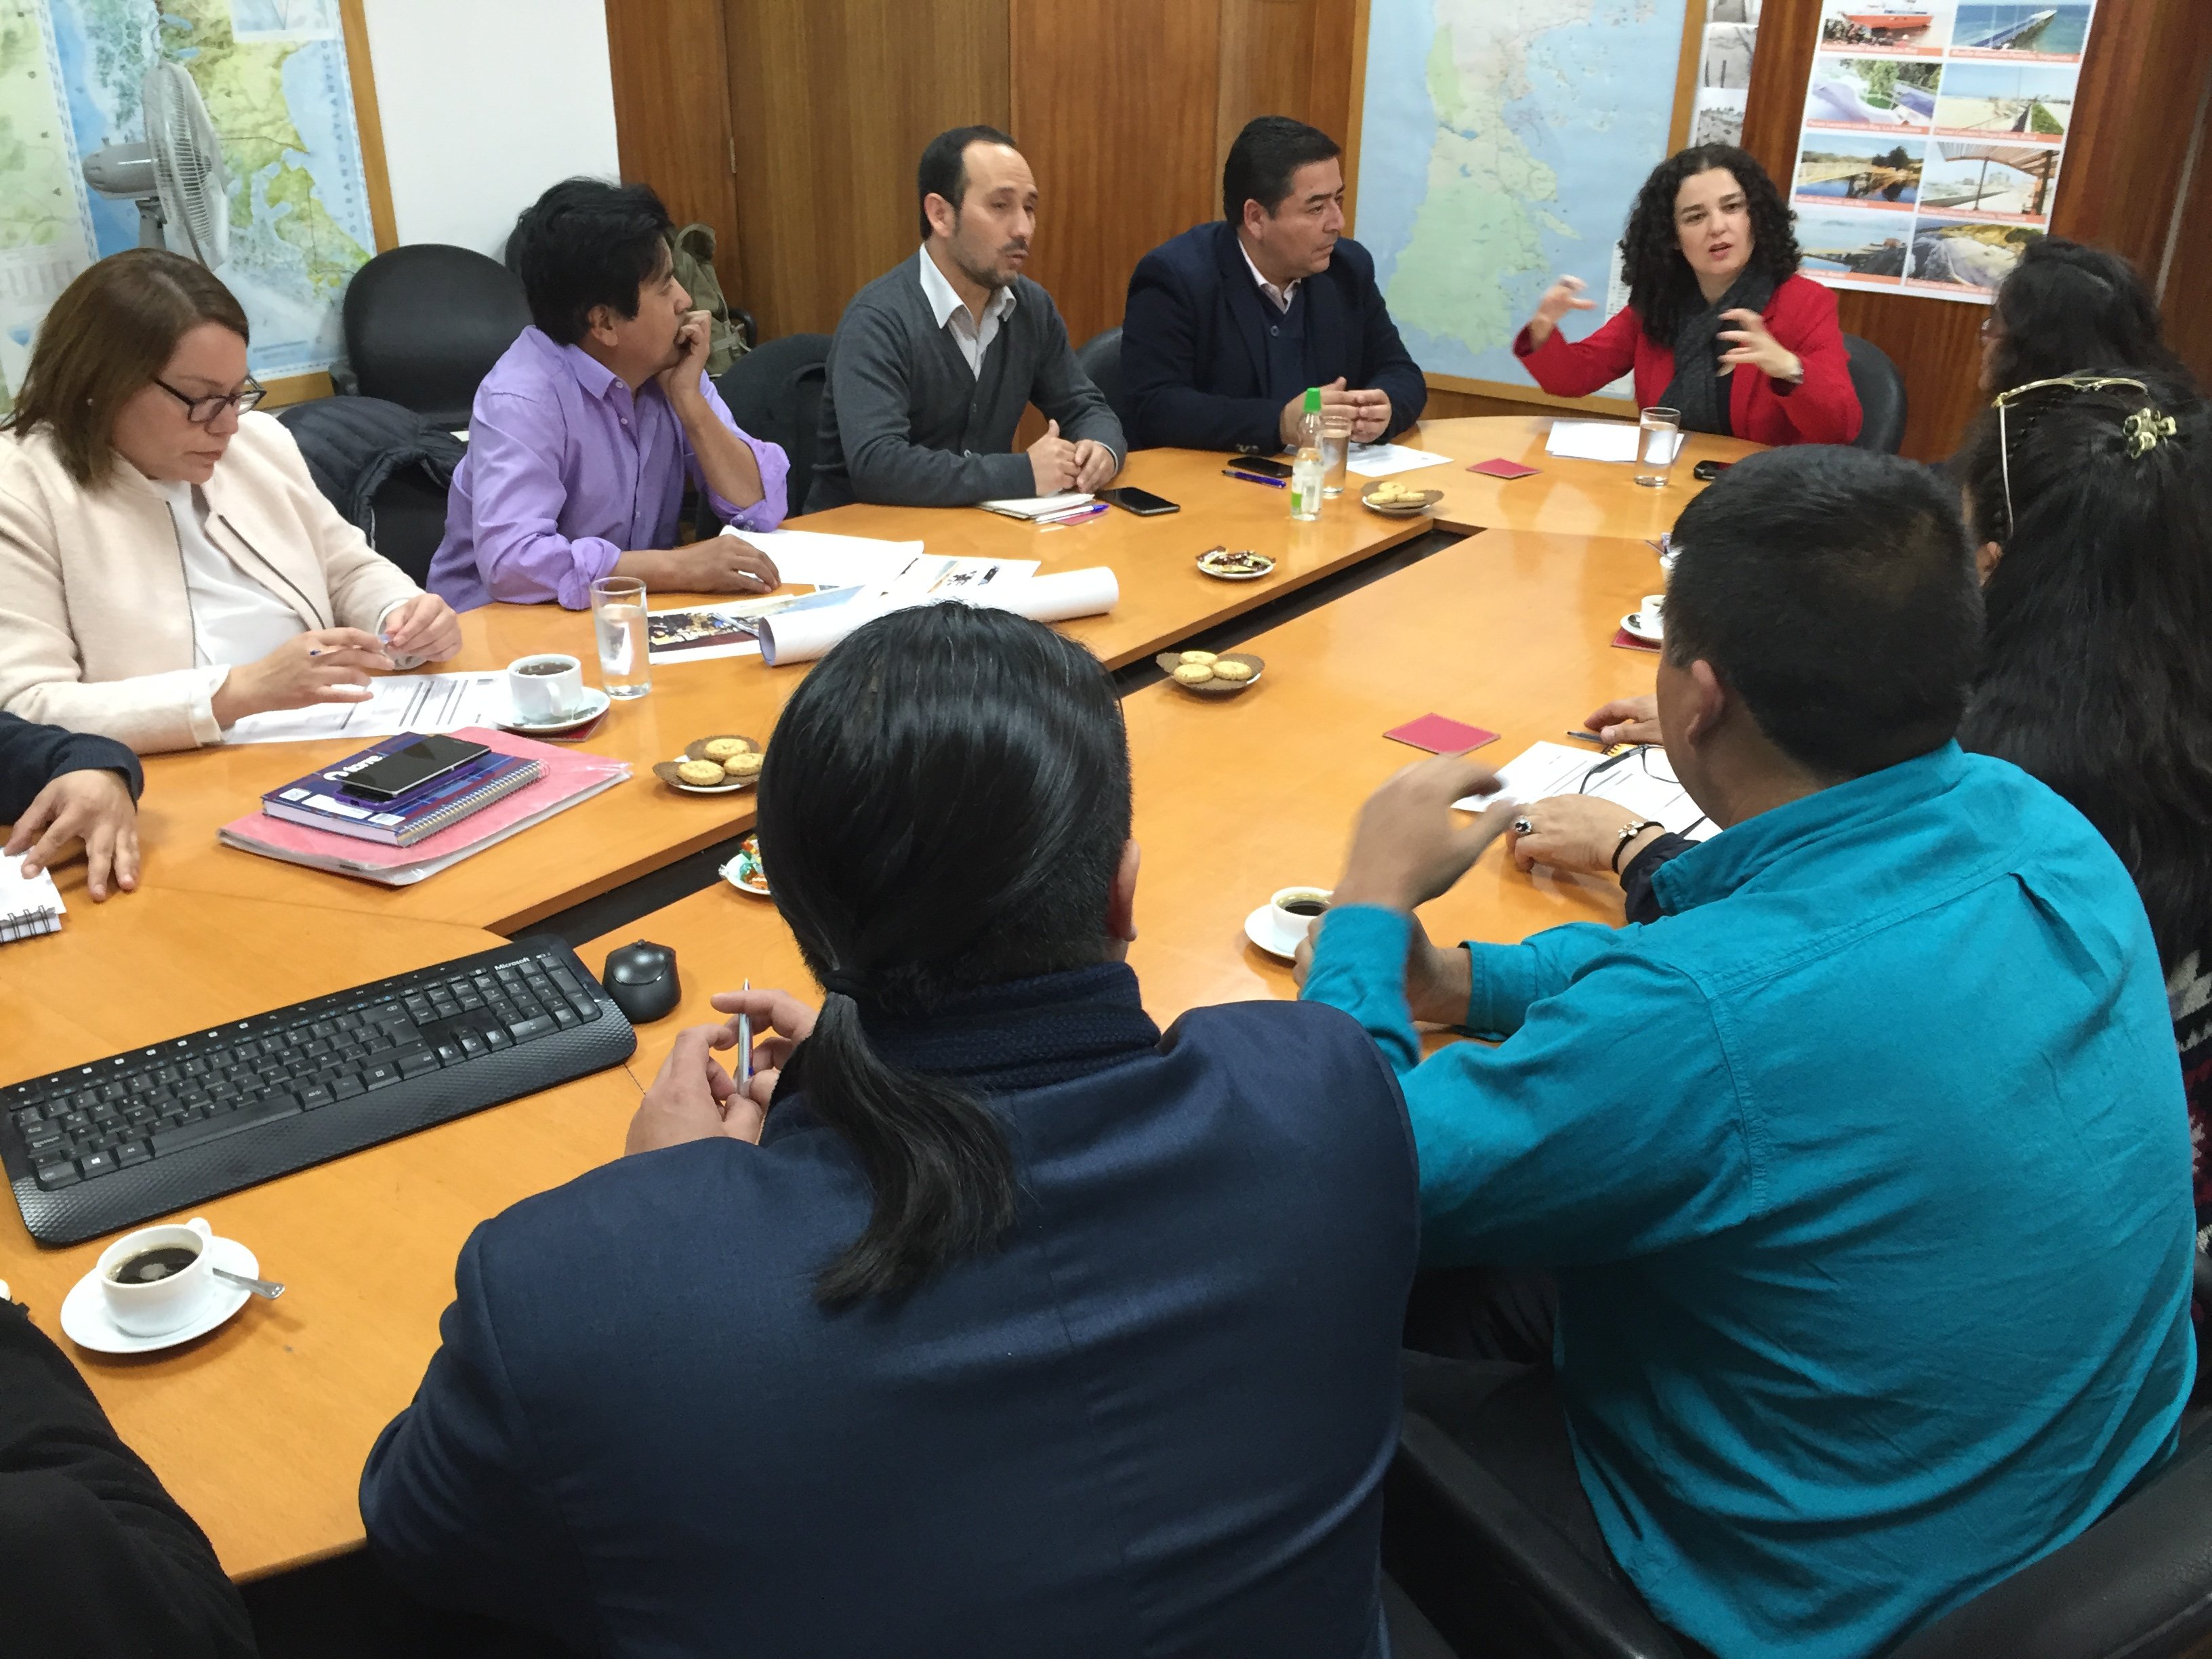 Dirigentes mapuche lafkenche expresan preocupación por leyes que coartan su subsistencia